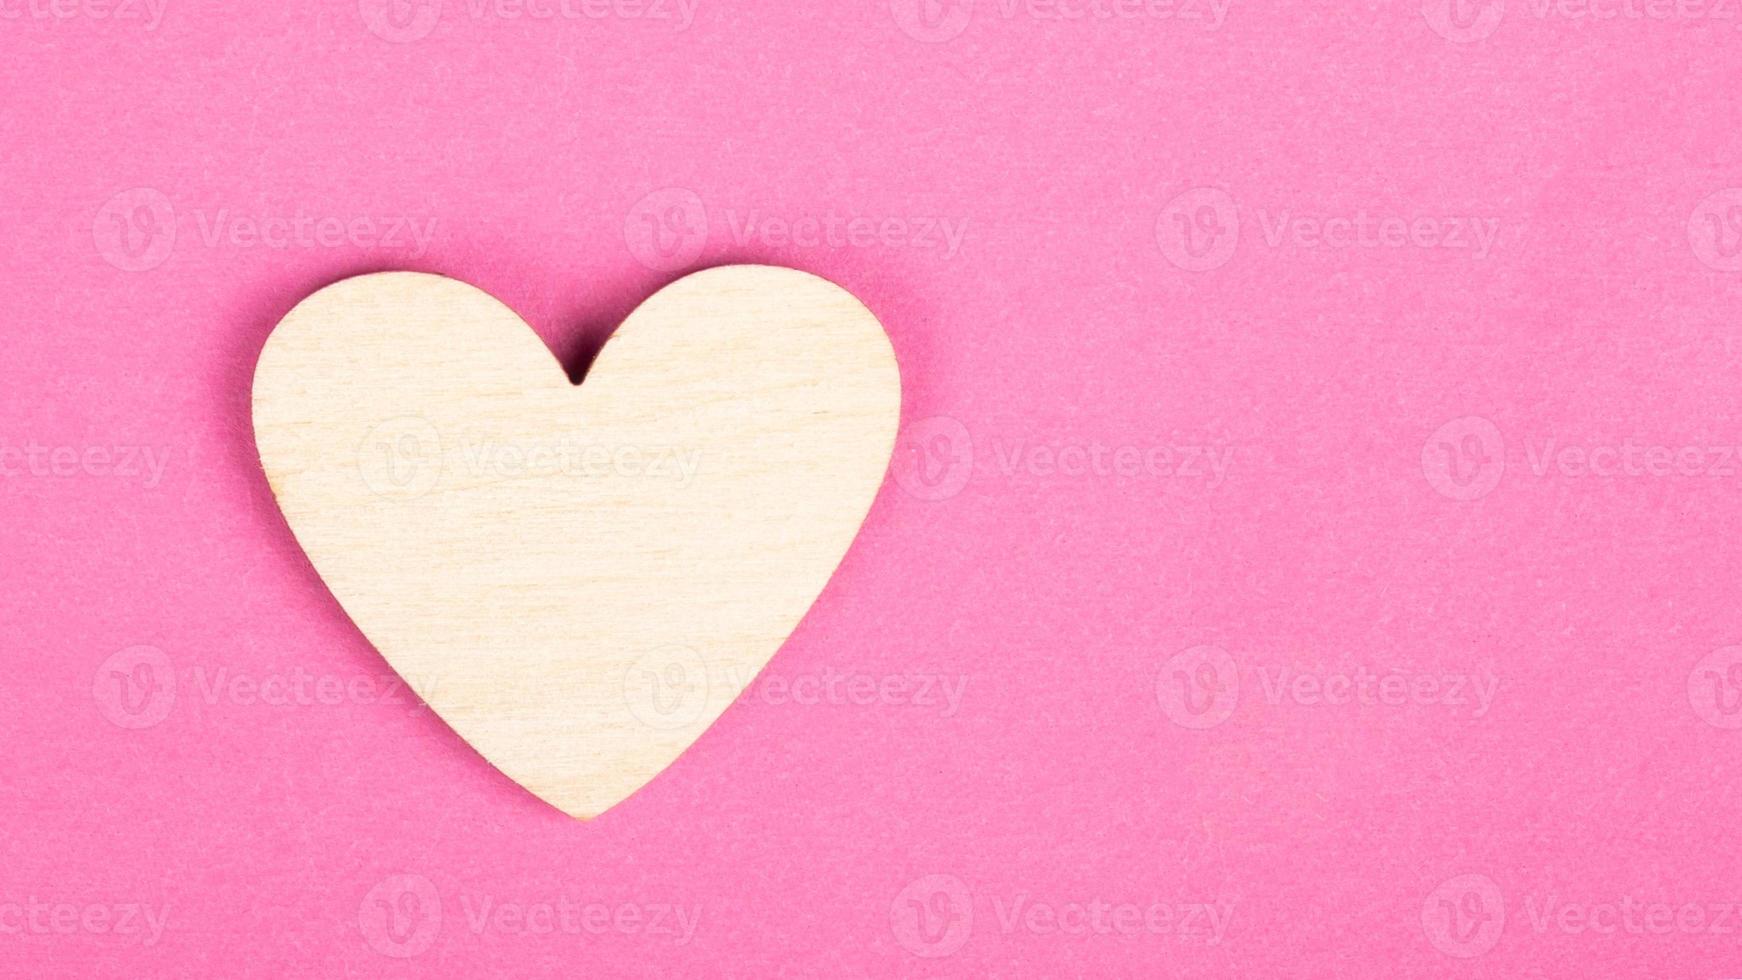 coeur en bois de la Saint-Valentin sur fond rose avec espace de copie photo